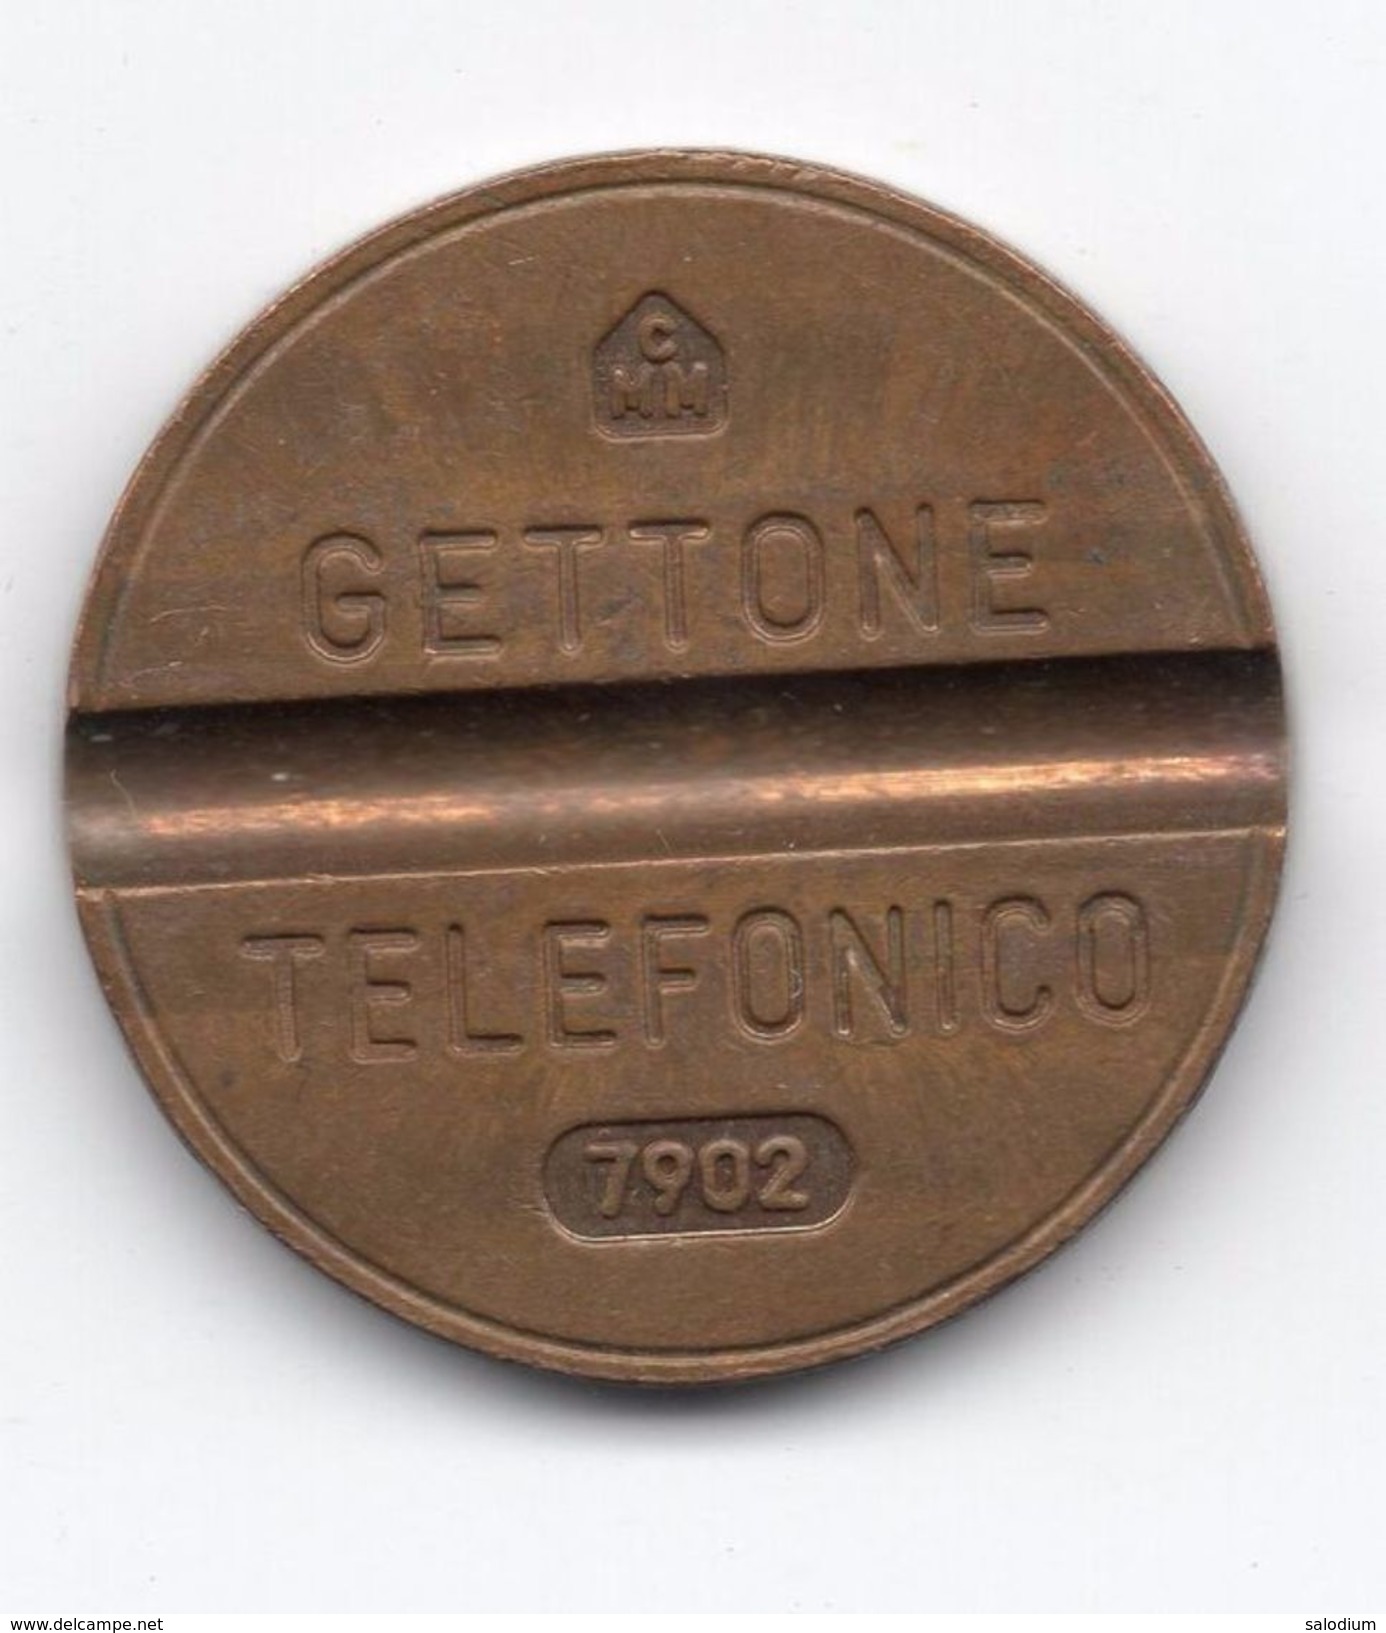 Gettone Telefonico 7902 Token Telephone - (Id-771) - Professionnels/De Société